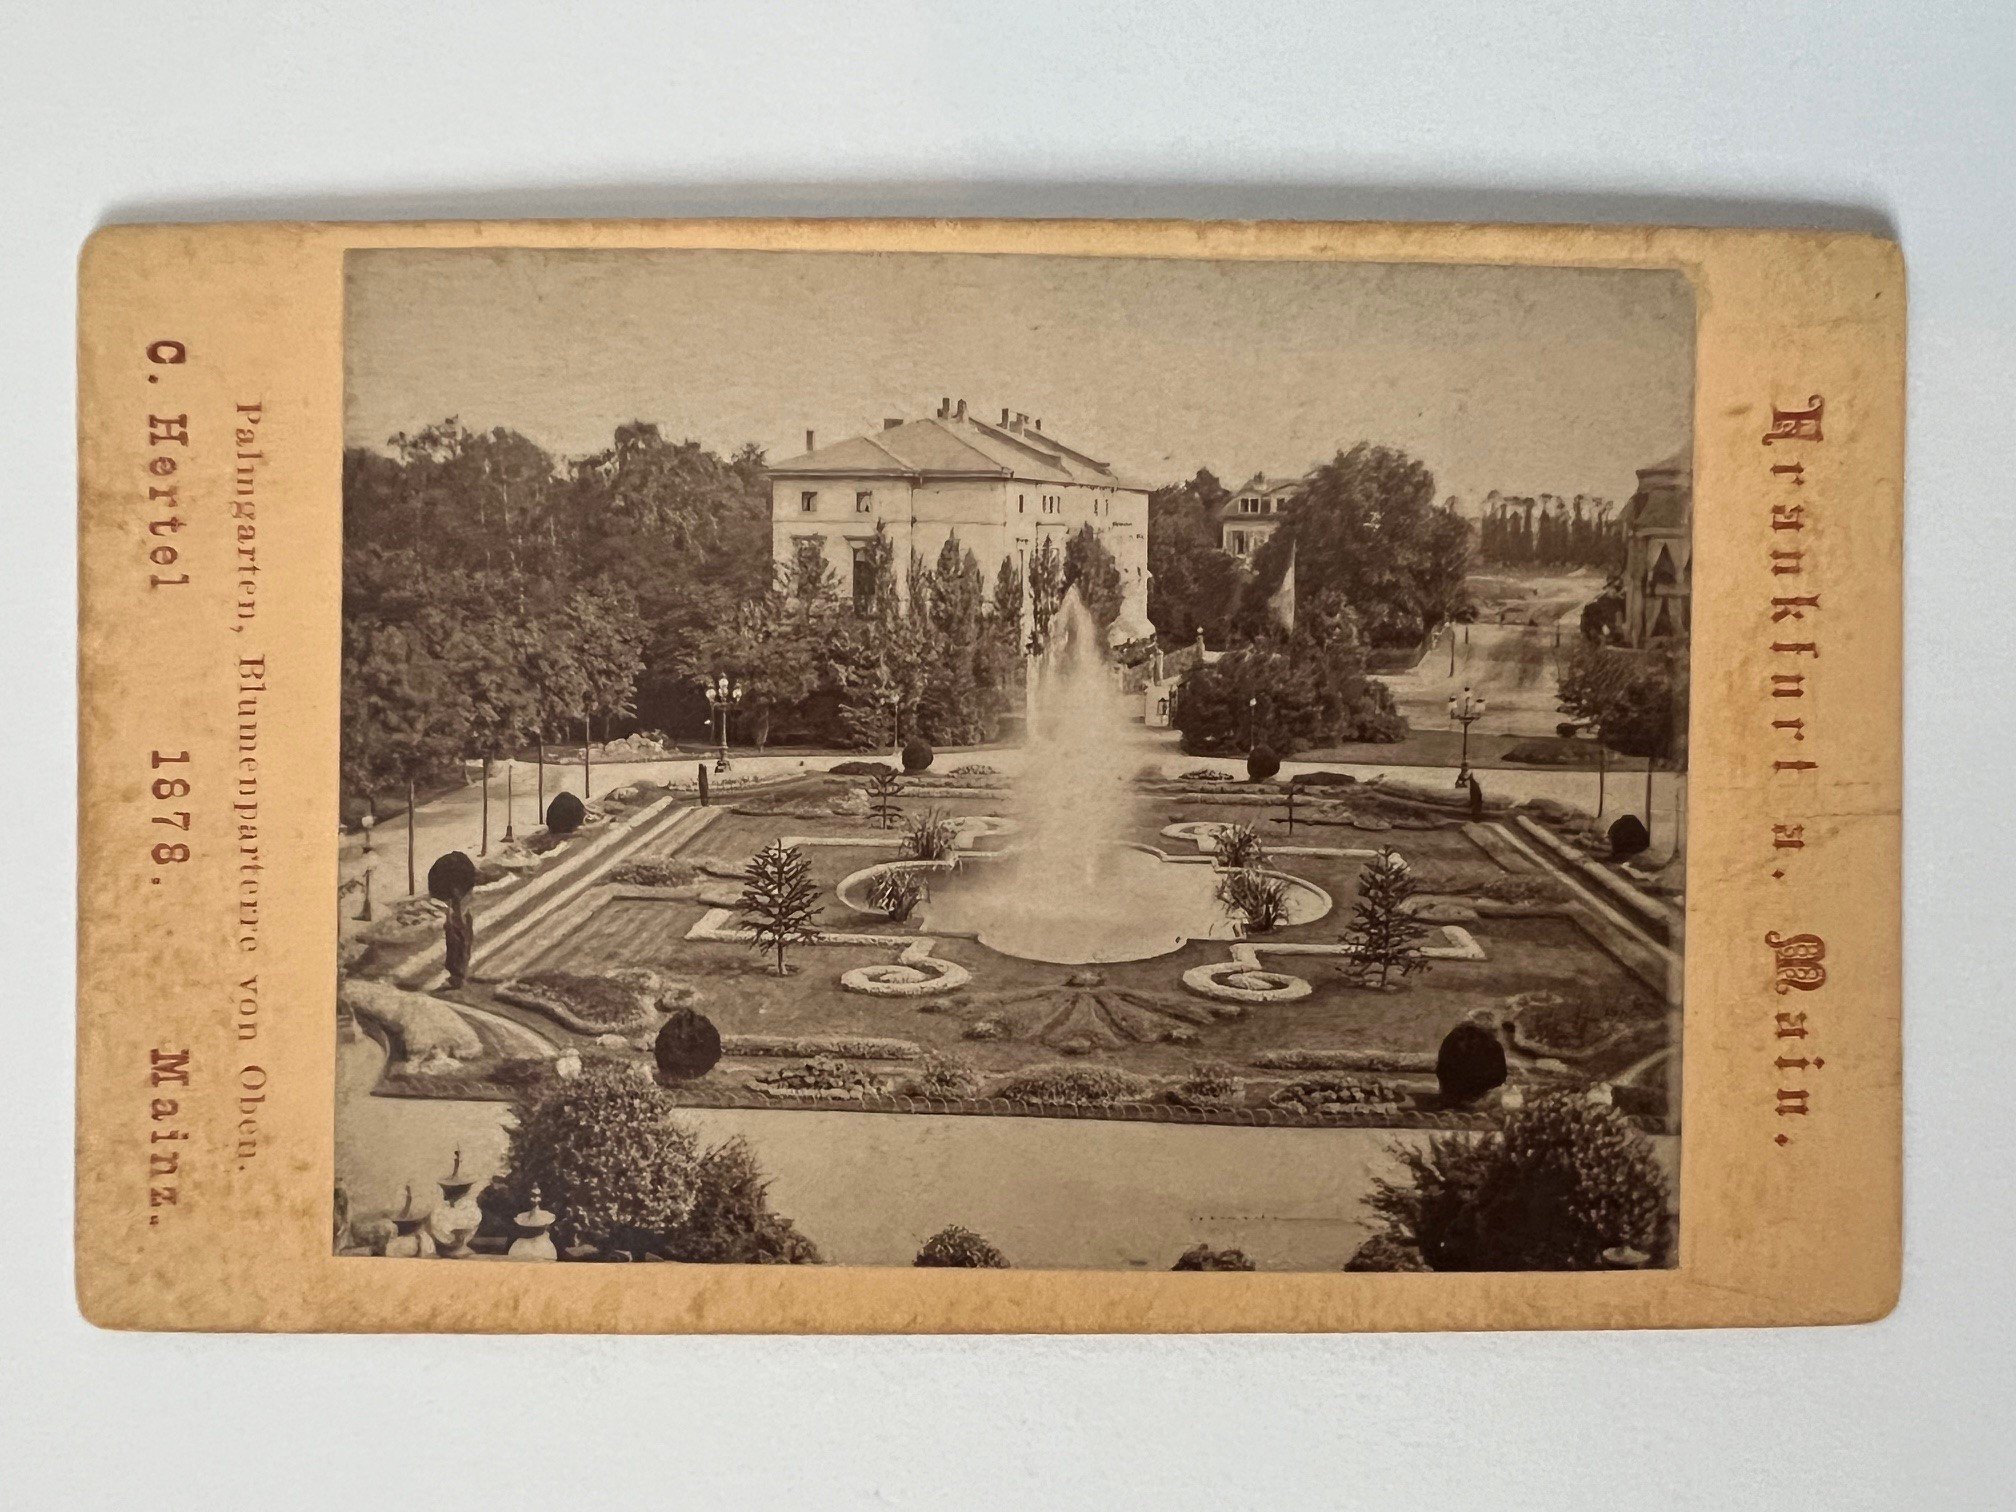 CdV, Carl Hertel, Frankfurt, Palmgarten, Blumenparterre von oben, 1878. (Taunus-Rhein-Main - Regionalgeschichtliche Sammlung Dr. Stefan Naas CC BY-NC-SA)